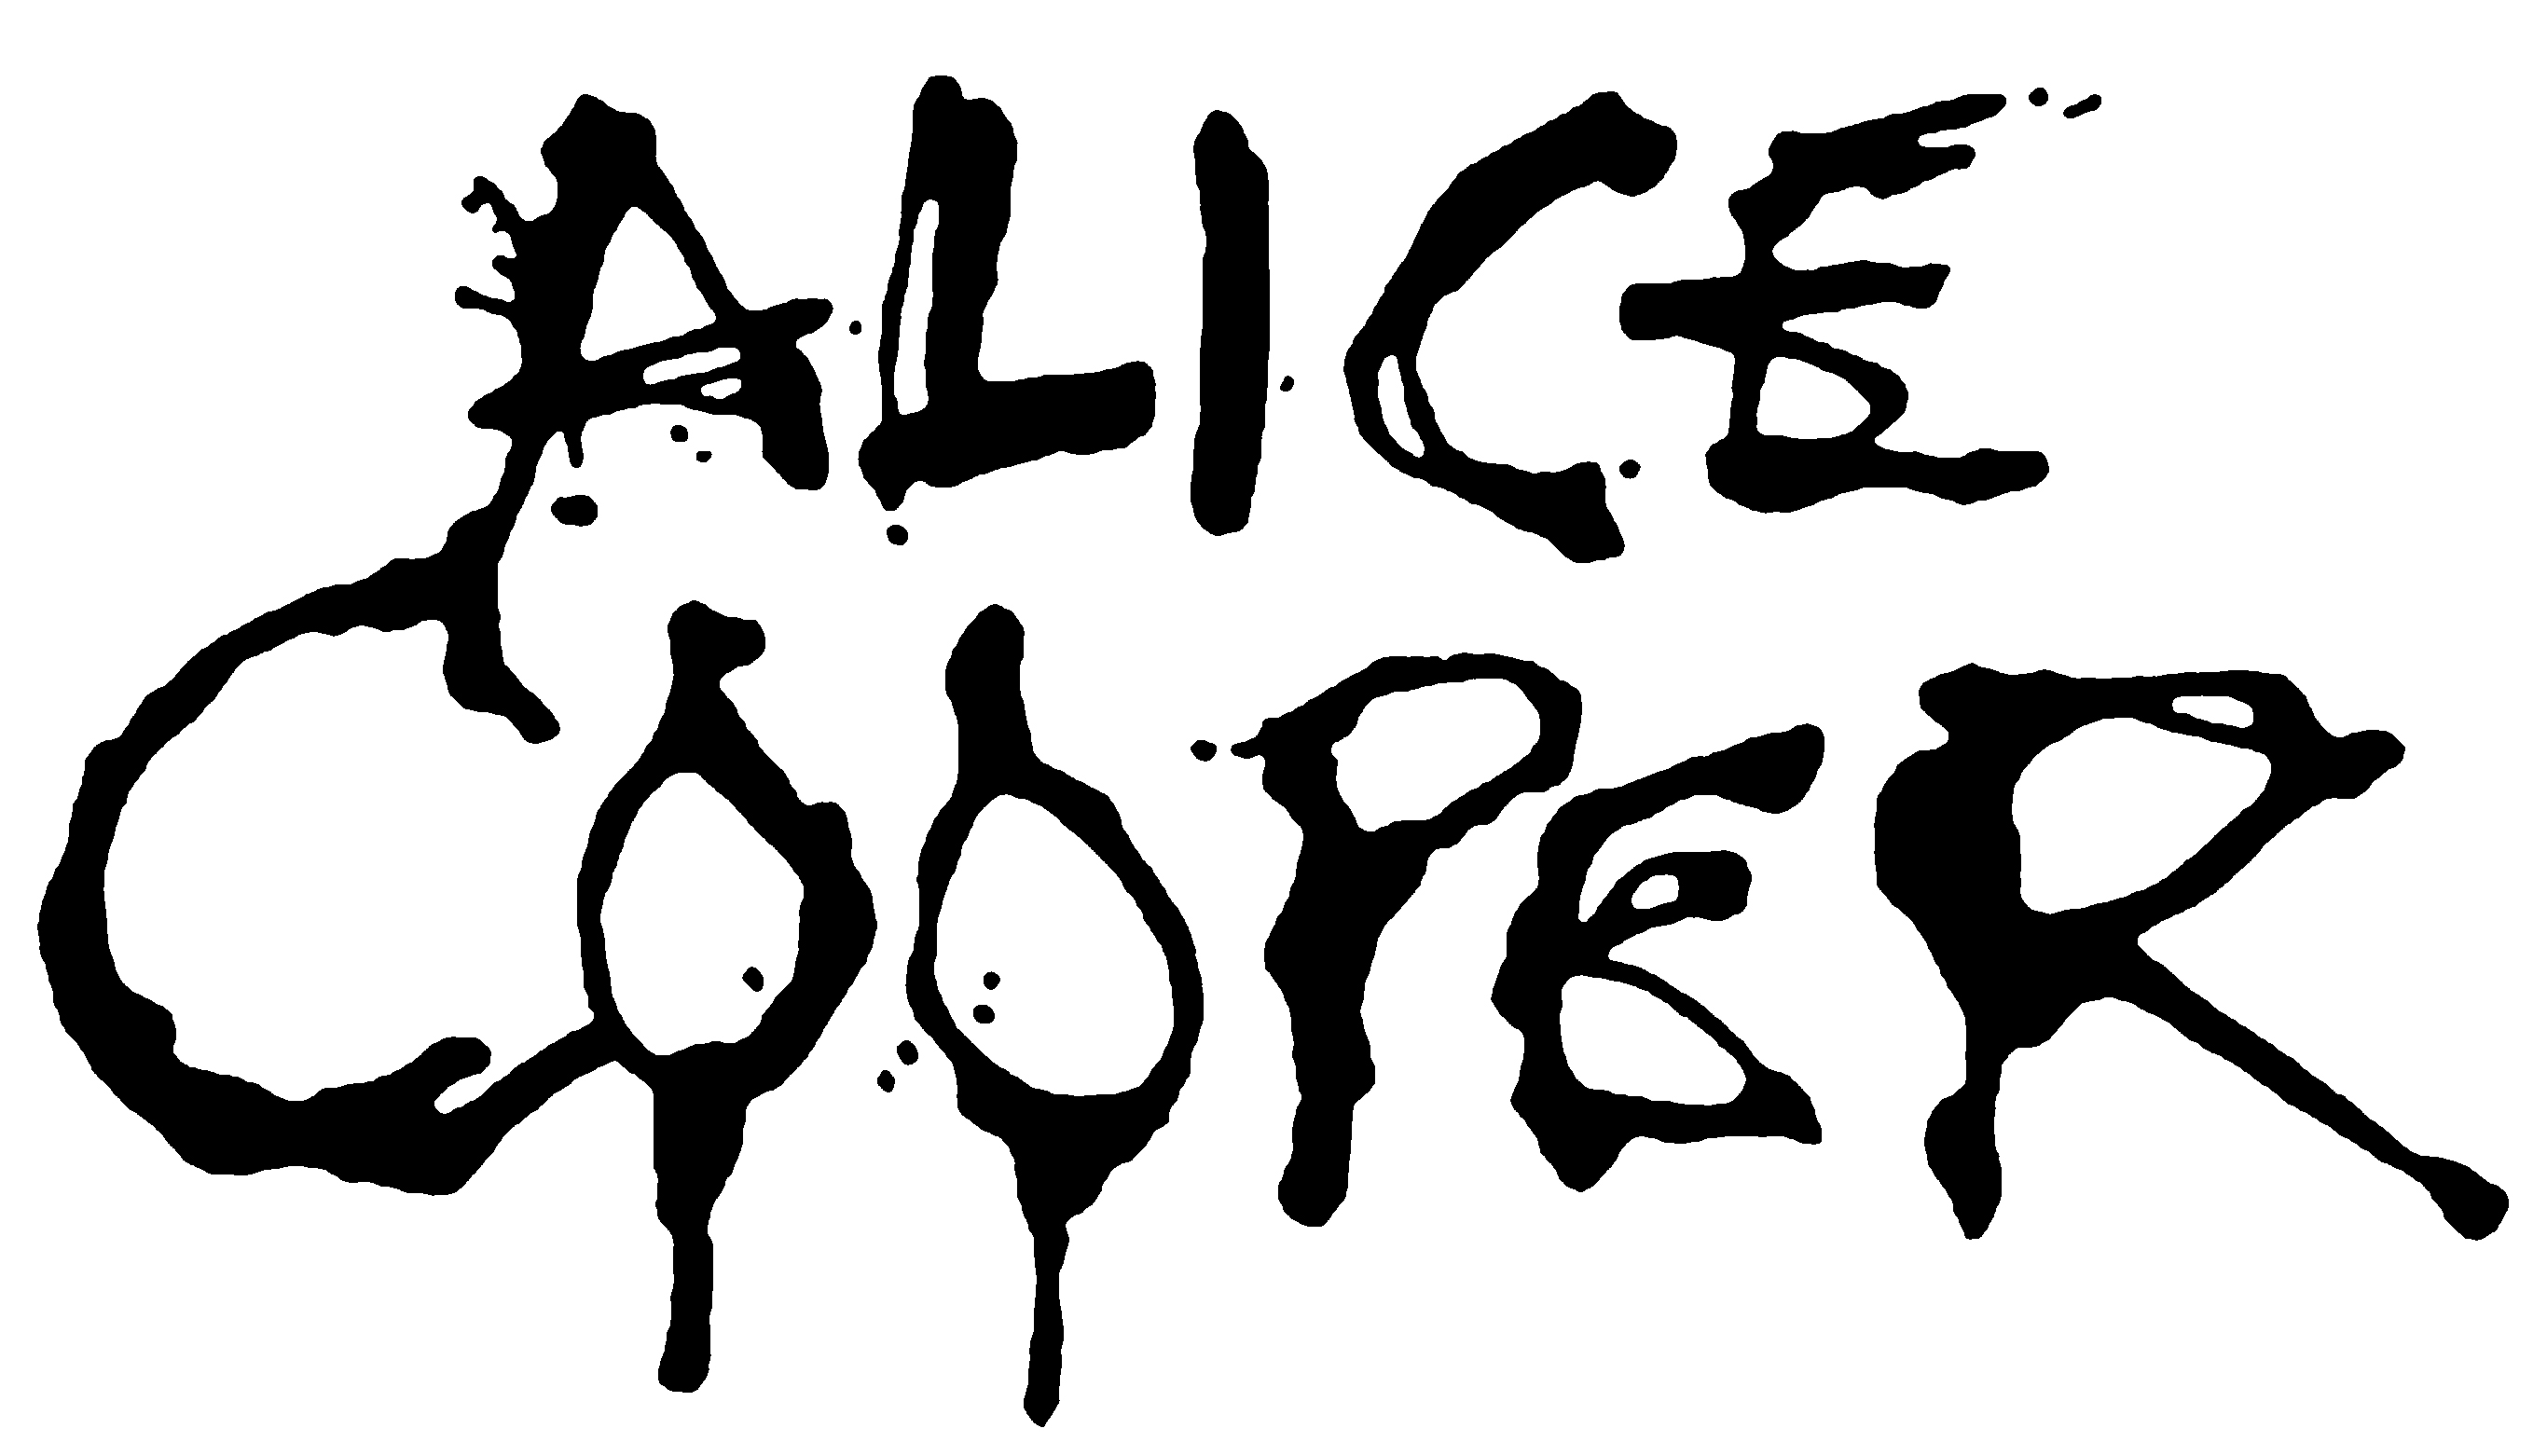 Alice Cooper Announces Summer 2020 Tour Dates